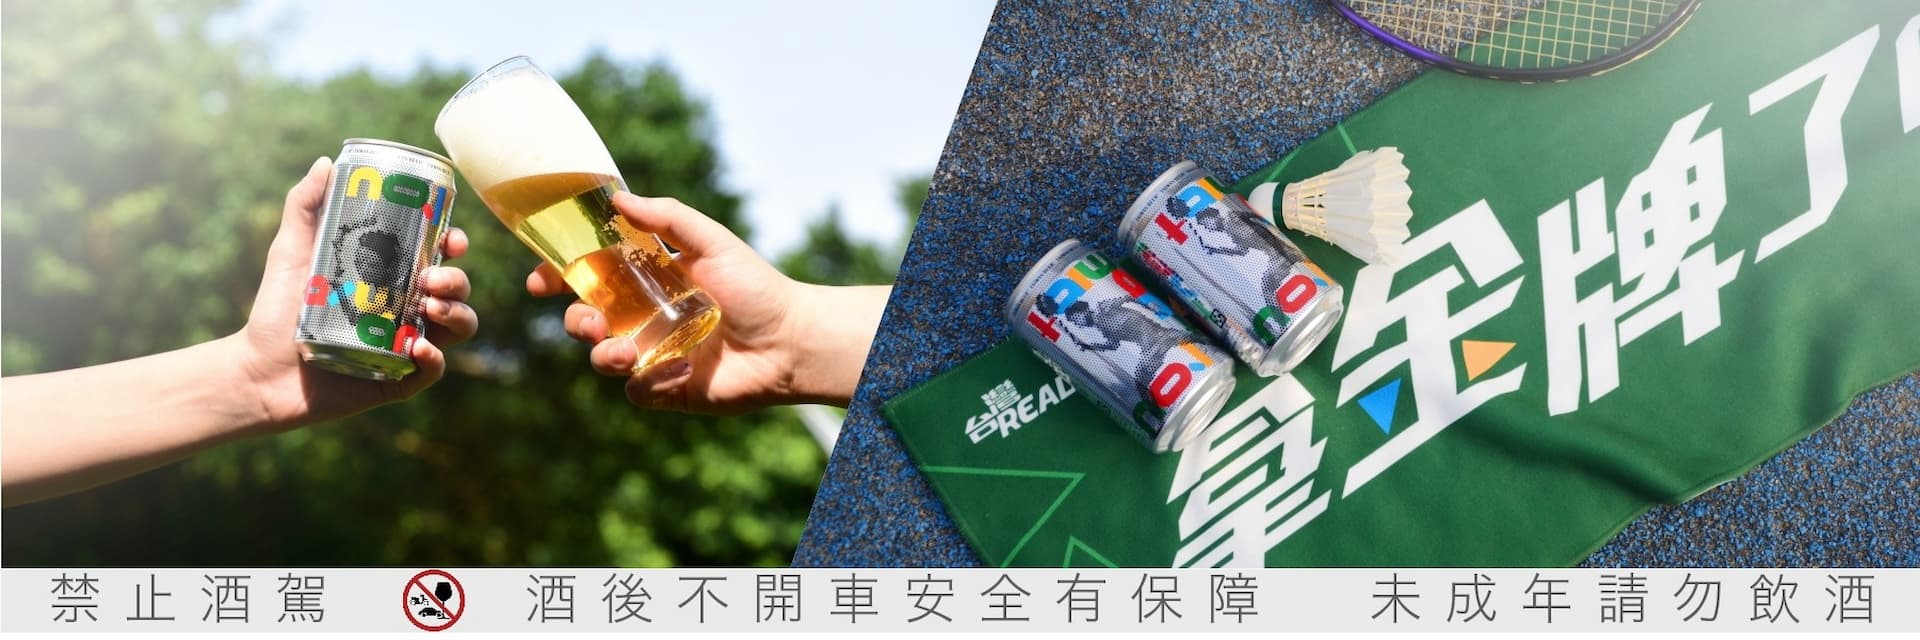 請把 2300 萬人份的元氣分給我吧 !台灣啤酒「奧運應援罐」邀你一起大喊「台灣 Ready Gold !」